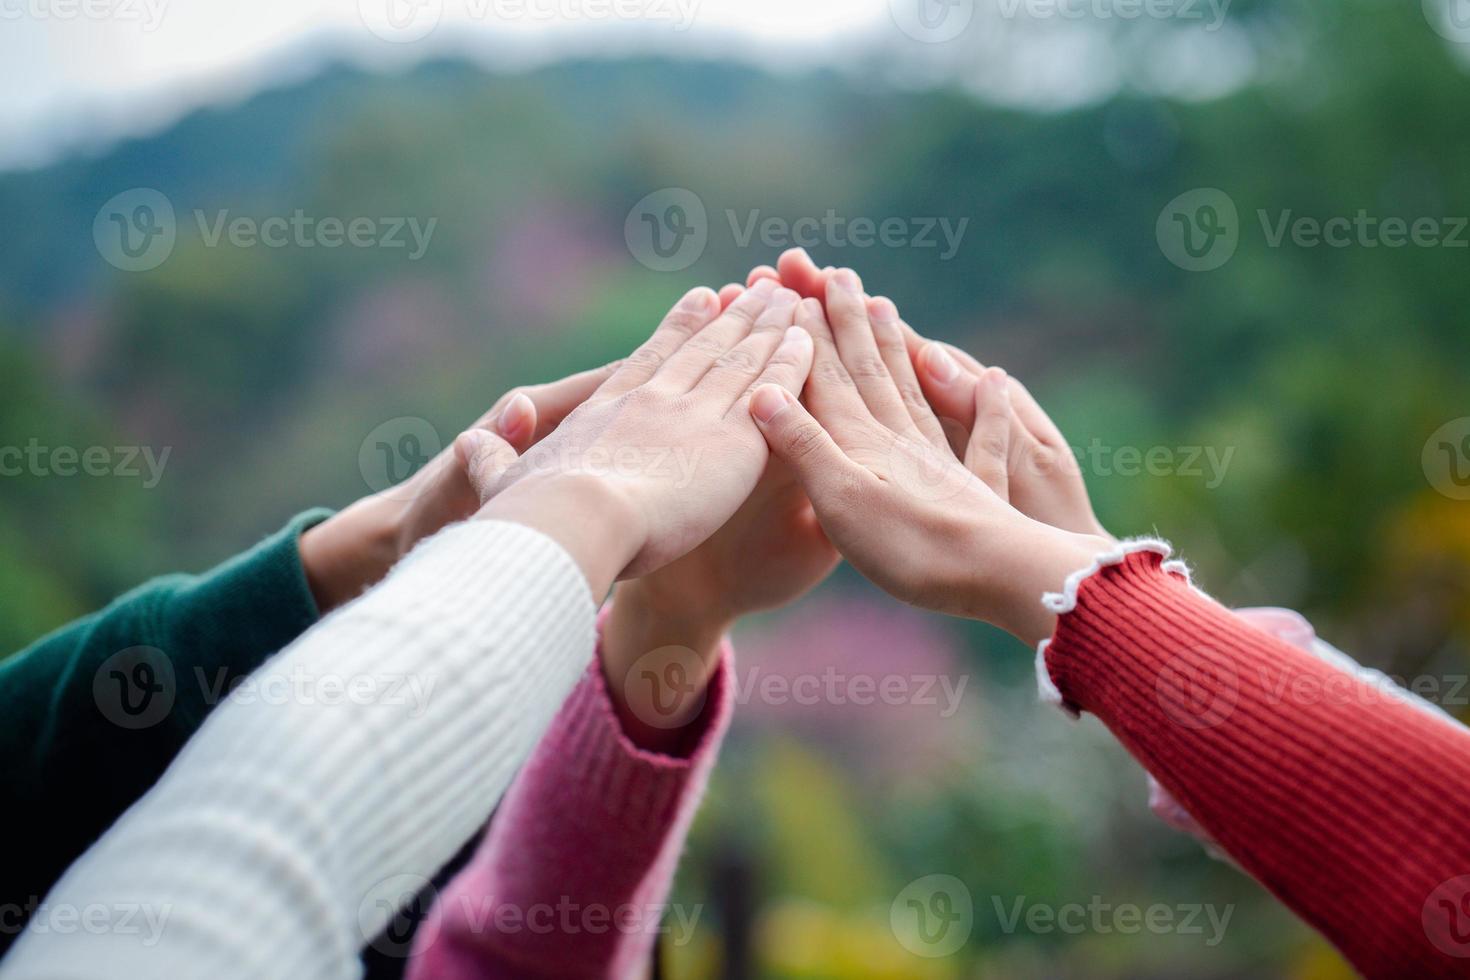 um grupo diversificado de pessoas conecta suas mãos como um sinal de apoio, expressando um senso de trabalho em equipe. unidade e união. foto